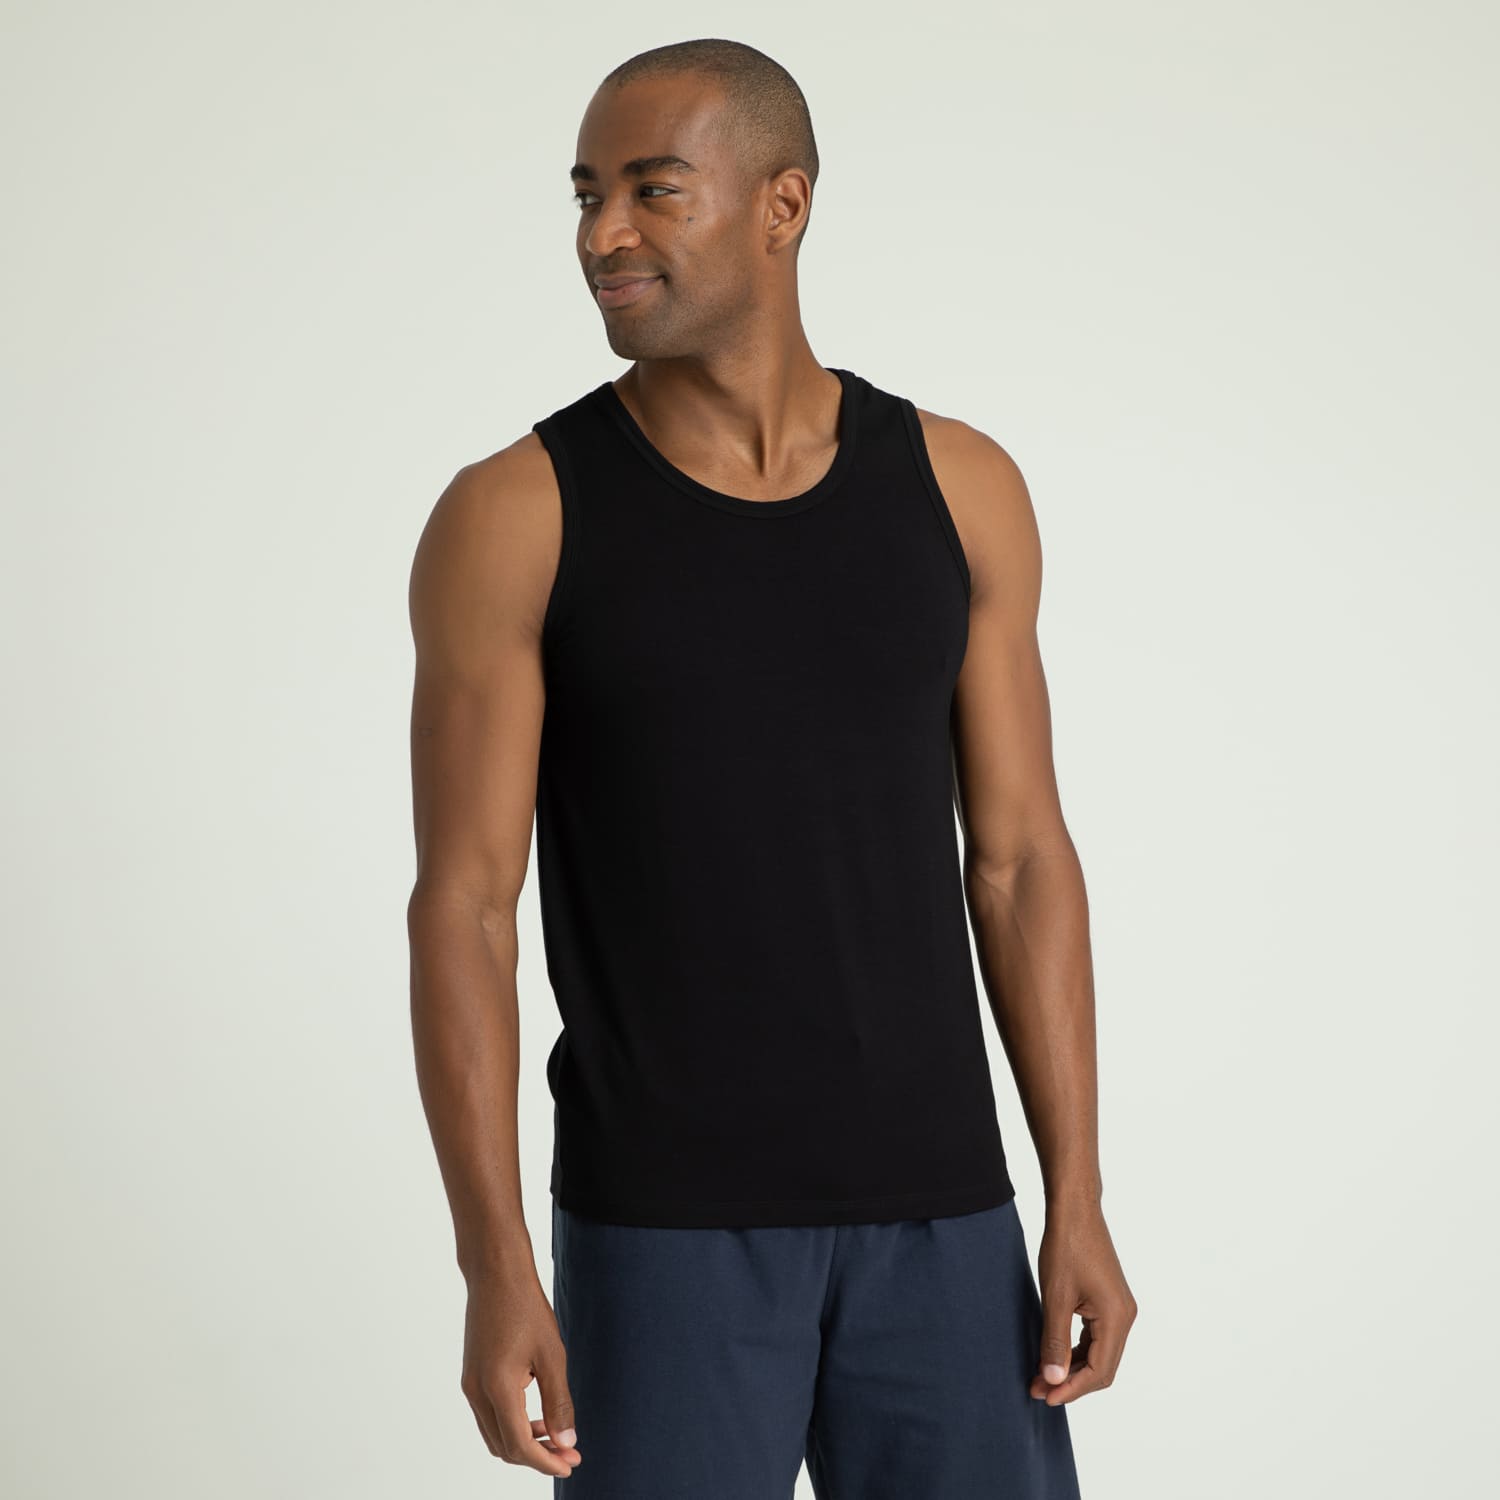 Camiseta Regata Modal - Casa das Cuecas Online - Cuecas, Pijamas e mais da  Moda masculina